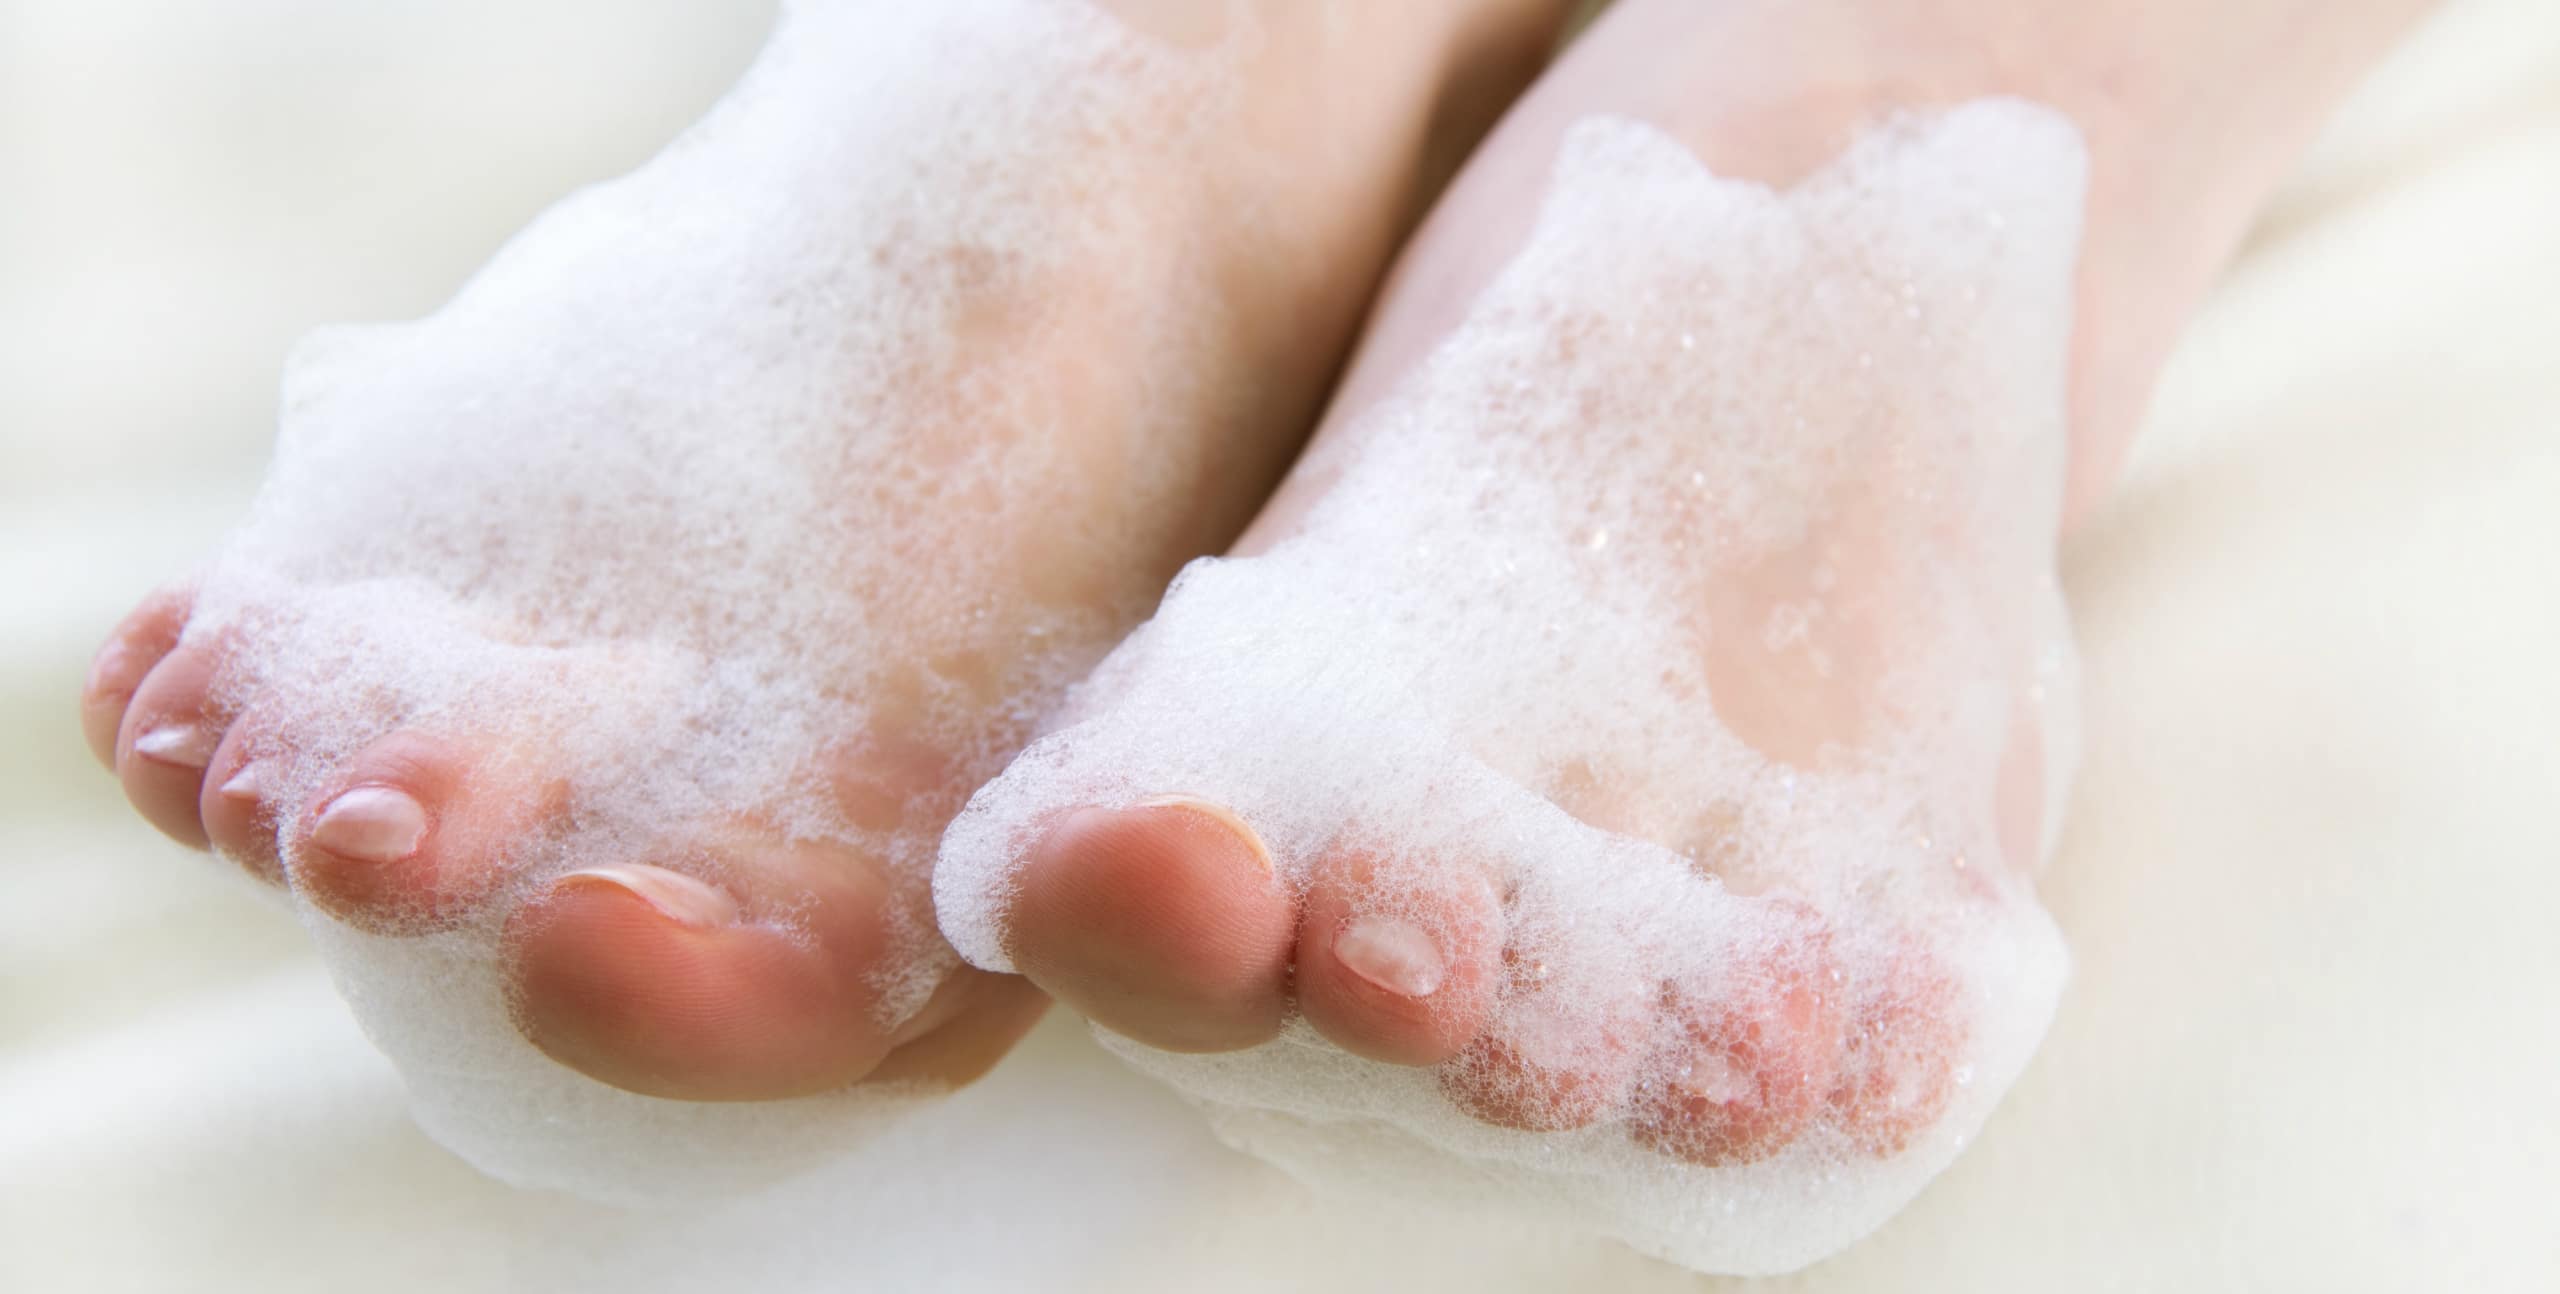 Feet in soap bubbles